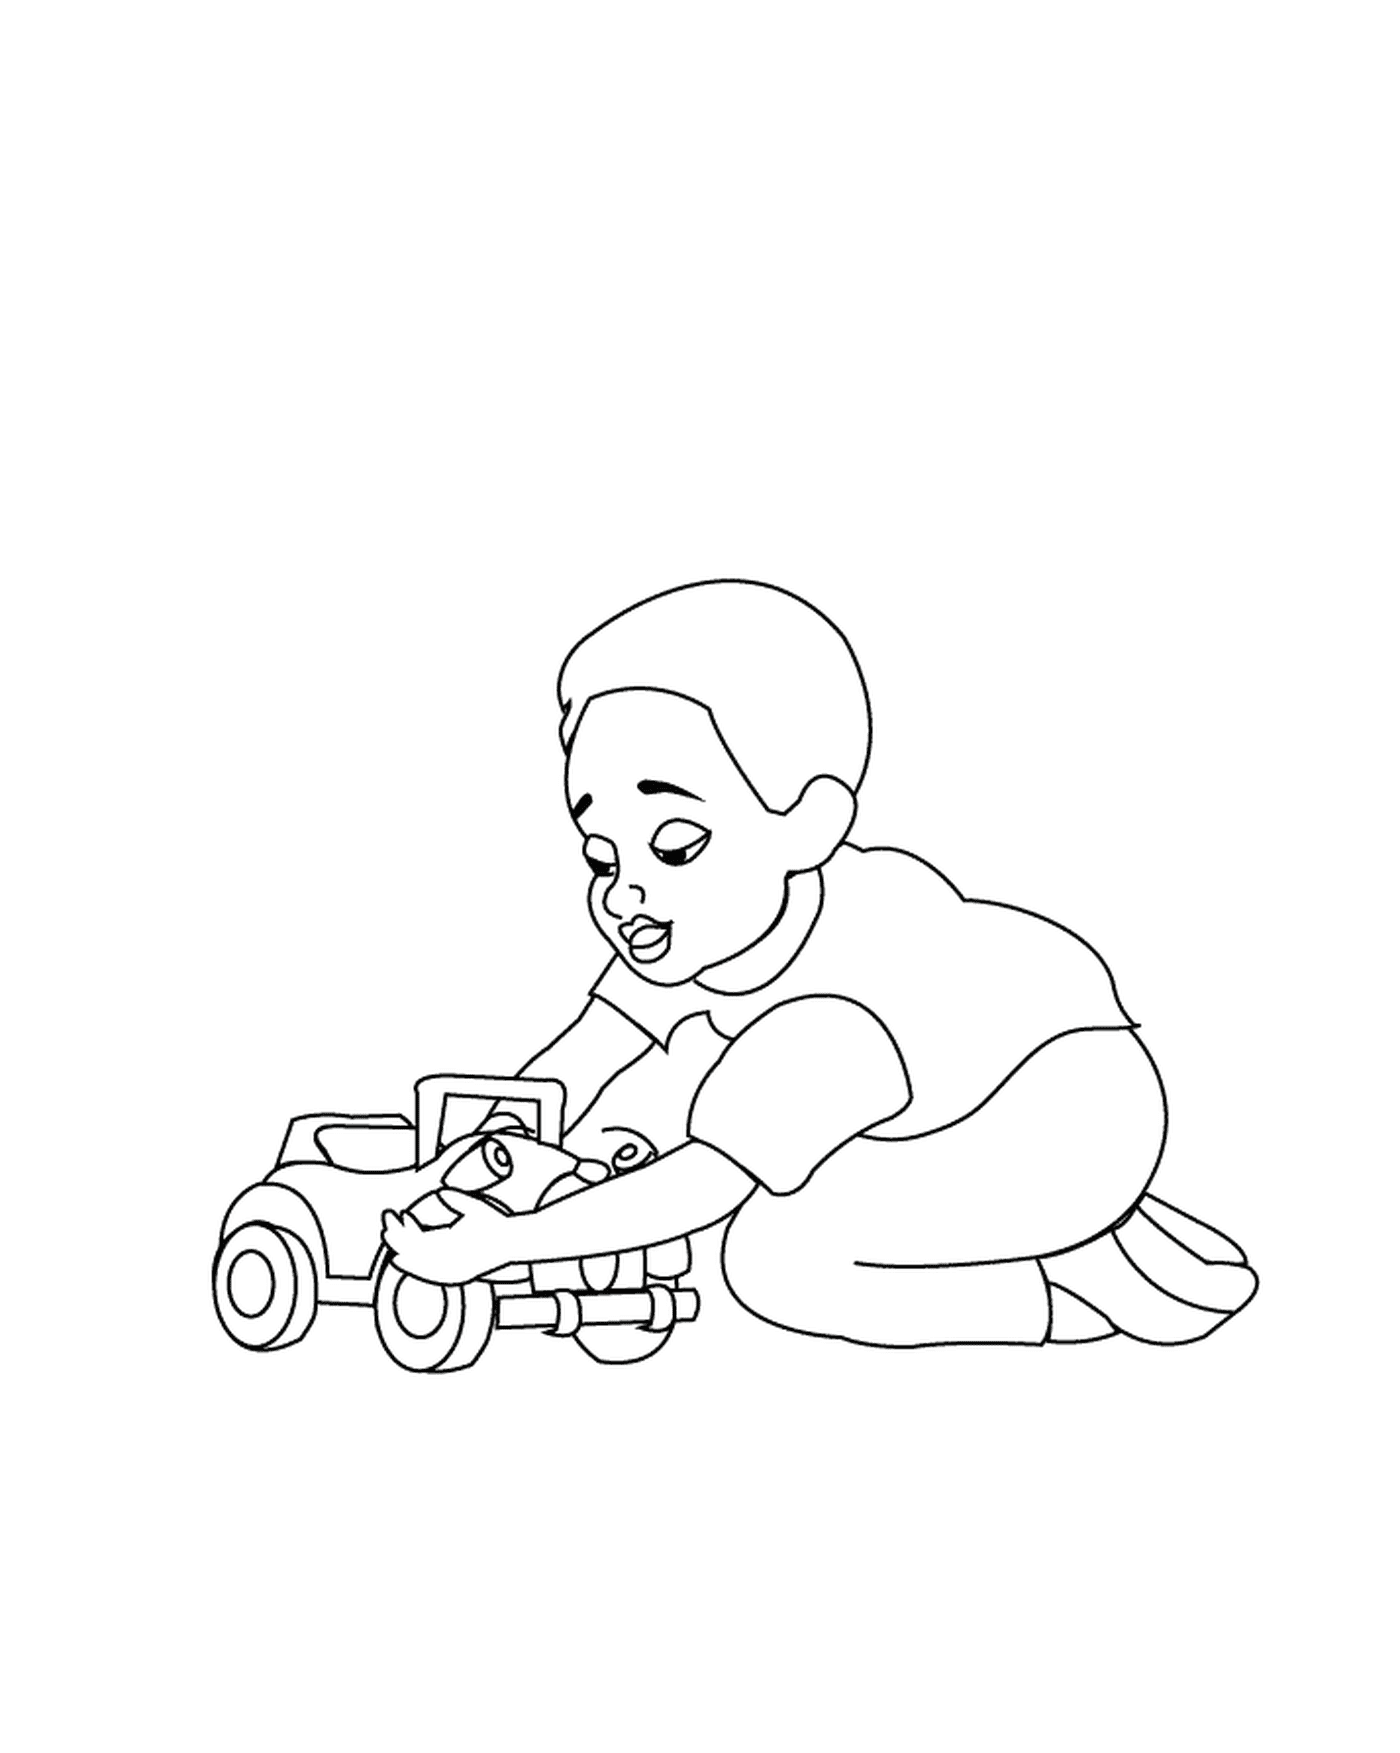  طفل يلعب مع سيارة لعبة 